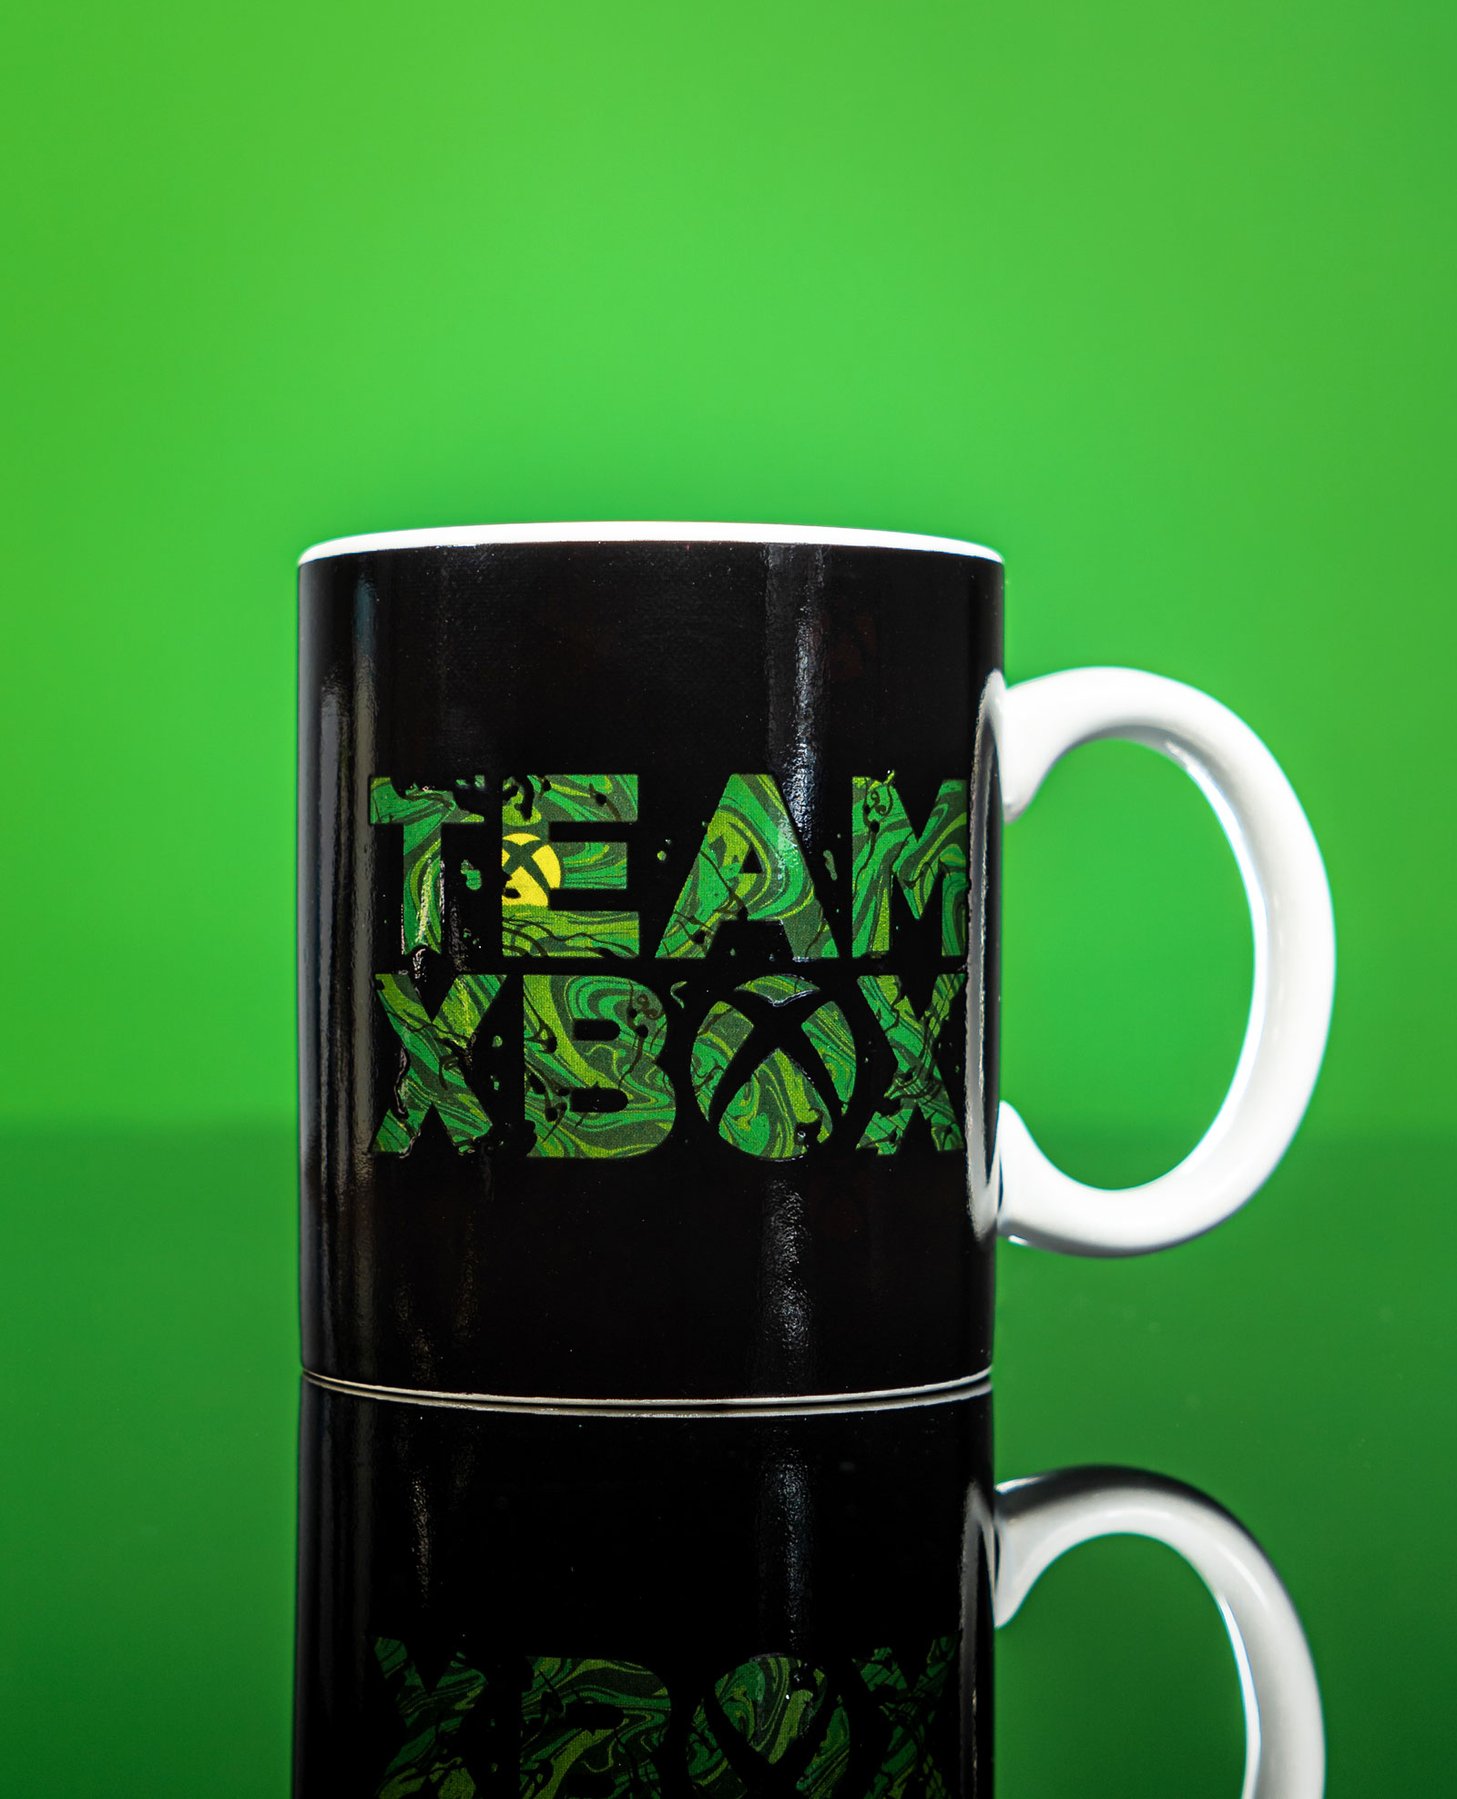 XBOX Mugg - Heat changing mug